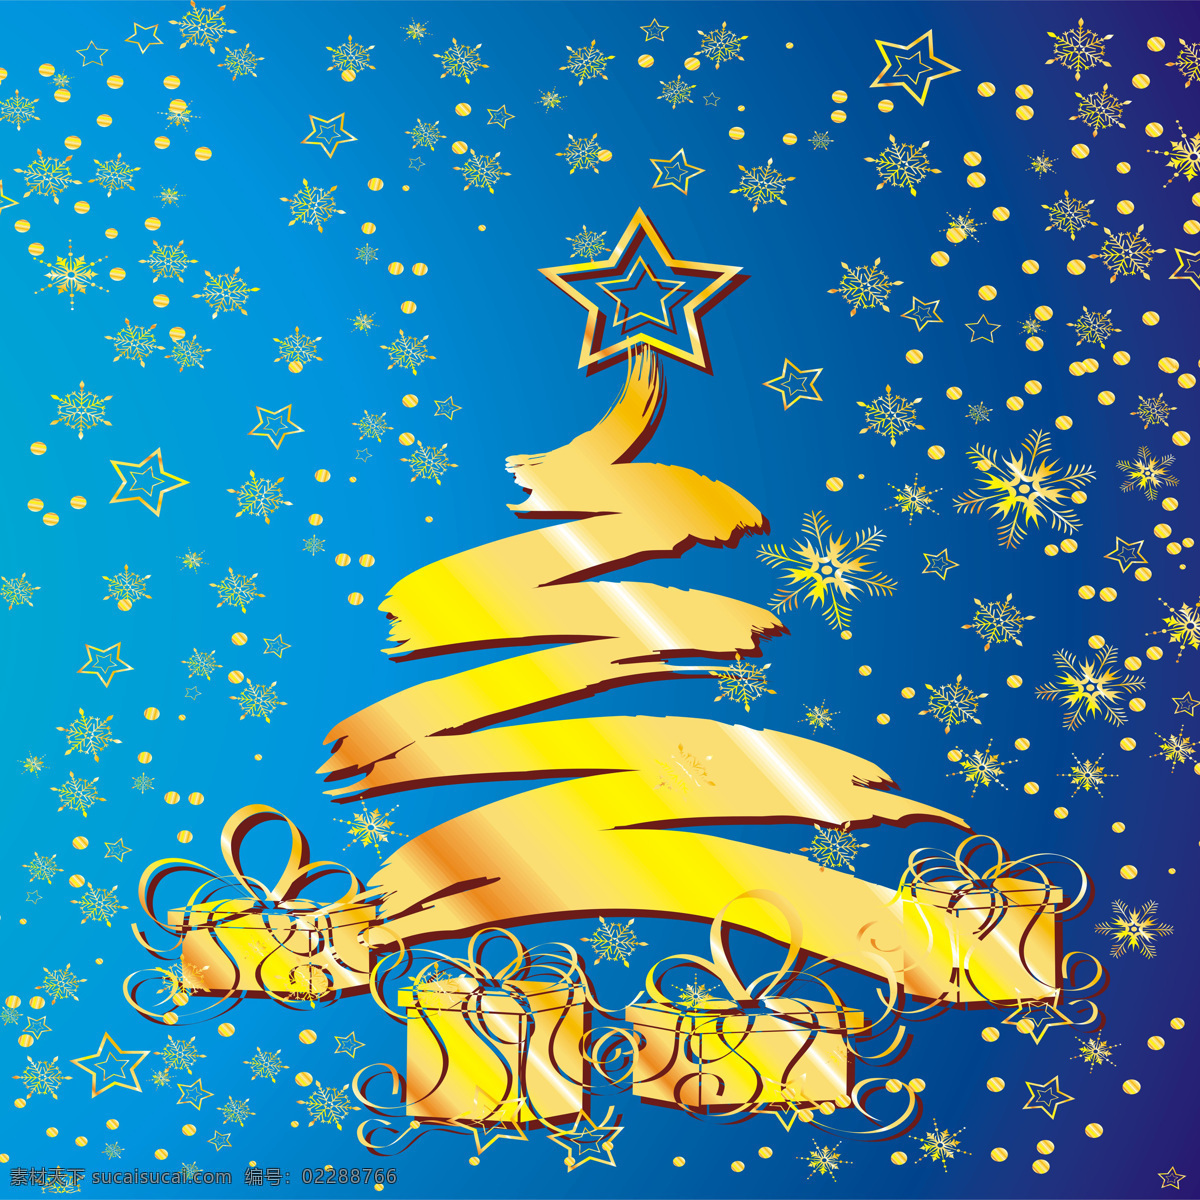 炫丽 涂鸦 圣诞树 雪花 漫天 装饰画 圣诞 蓝色 精美